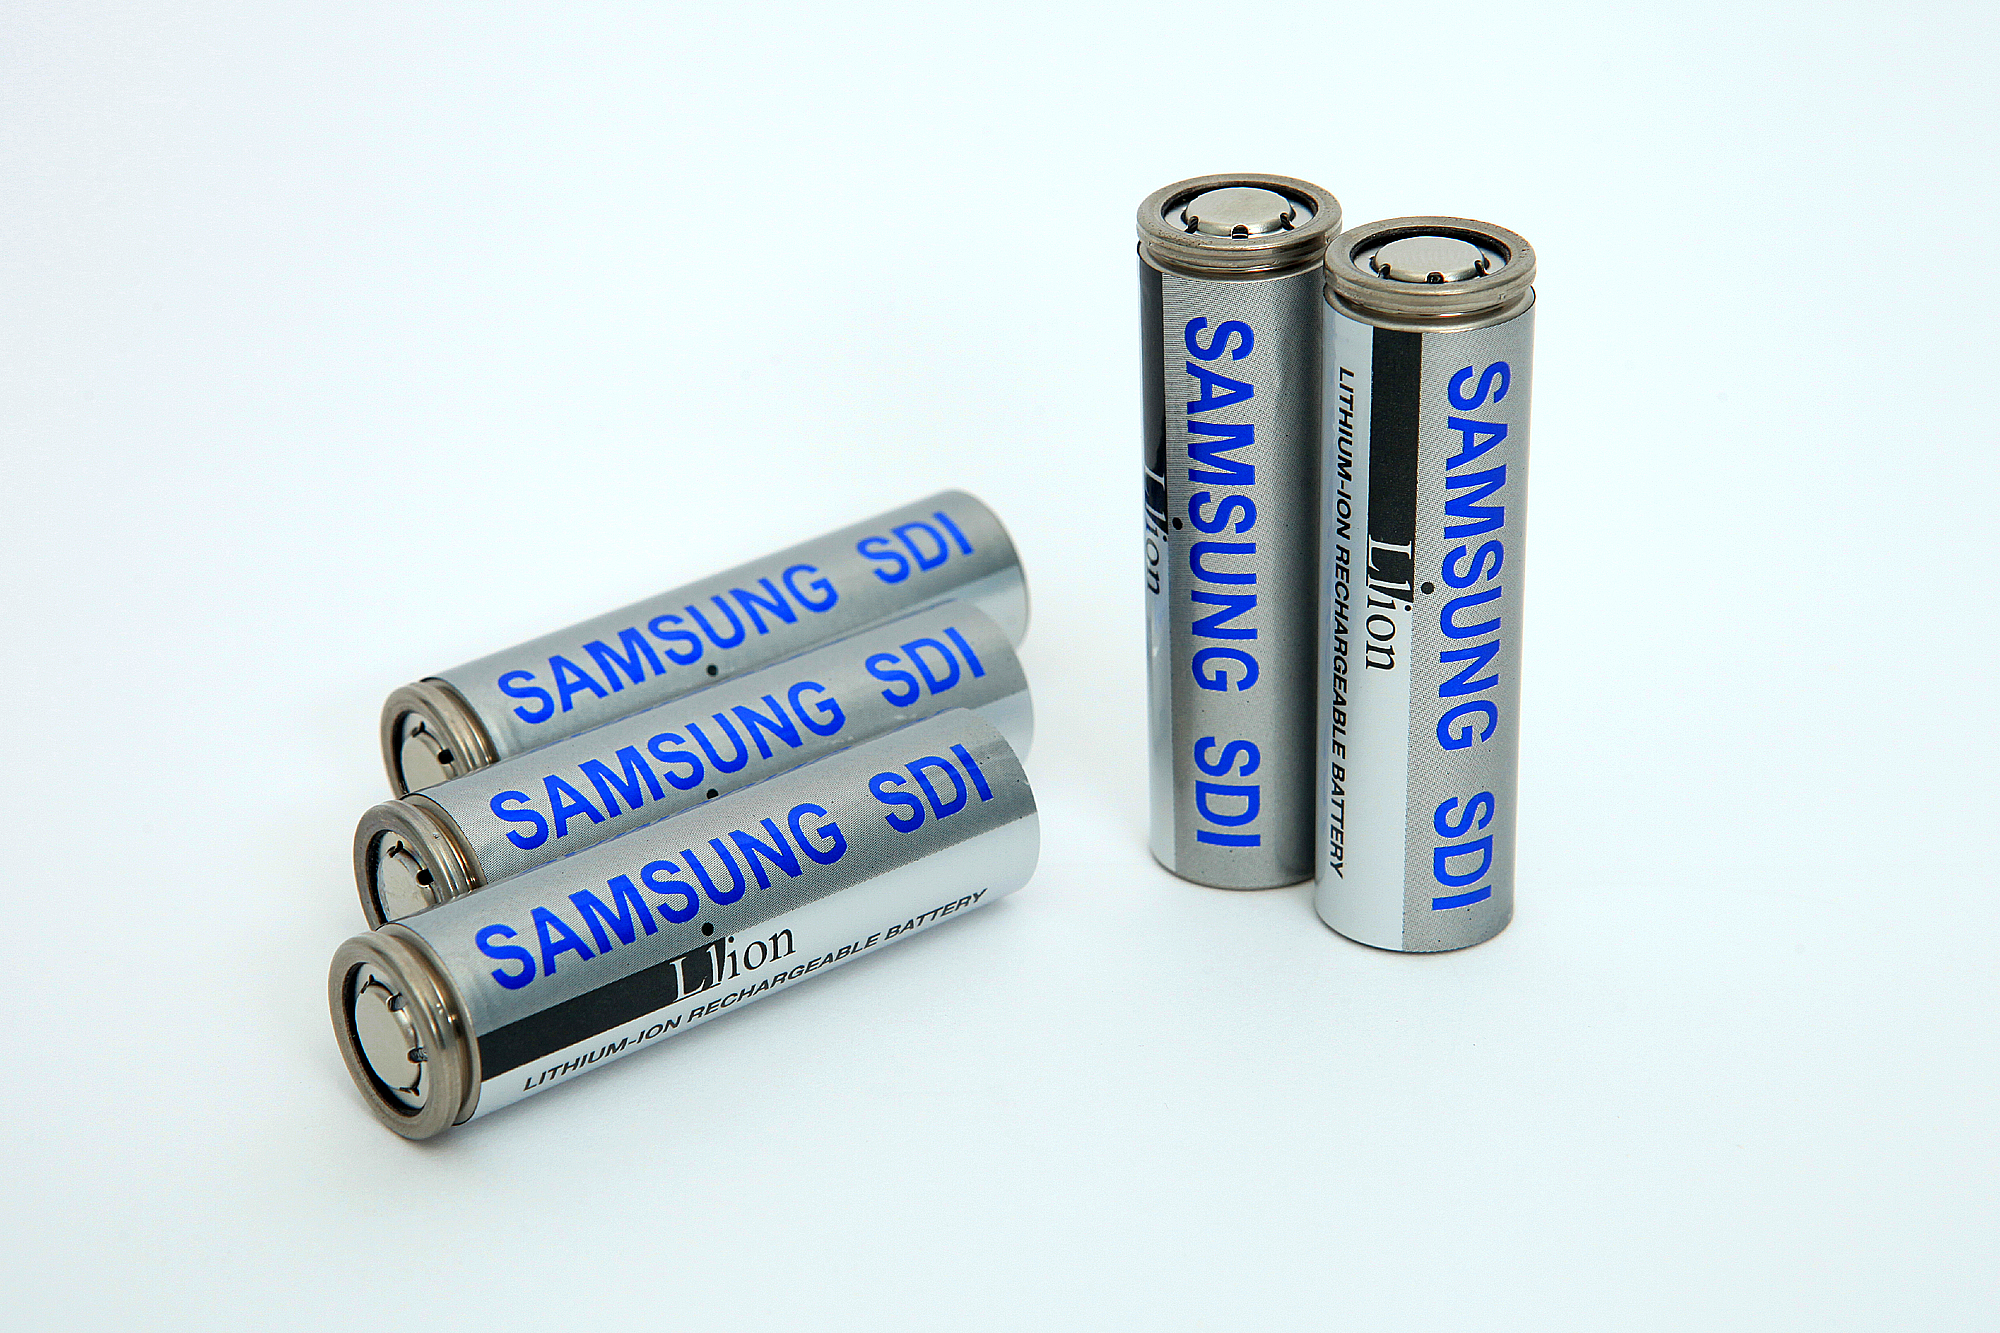 Samsung li ion Battery. Литий-ионный аккумулятор. Samsung SDI. Призматики аккумуляторы.